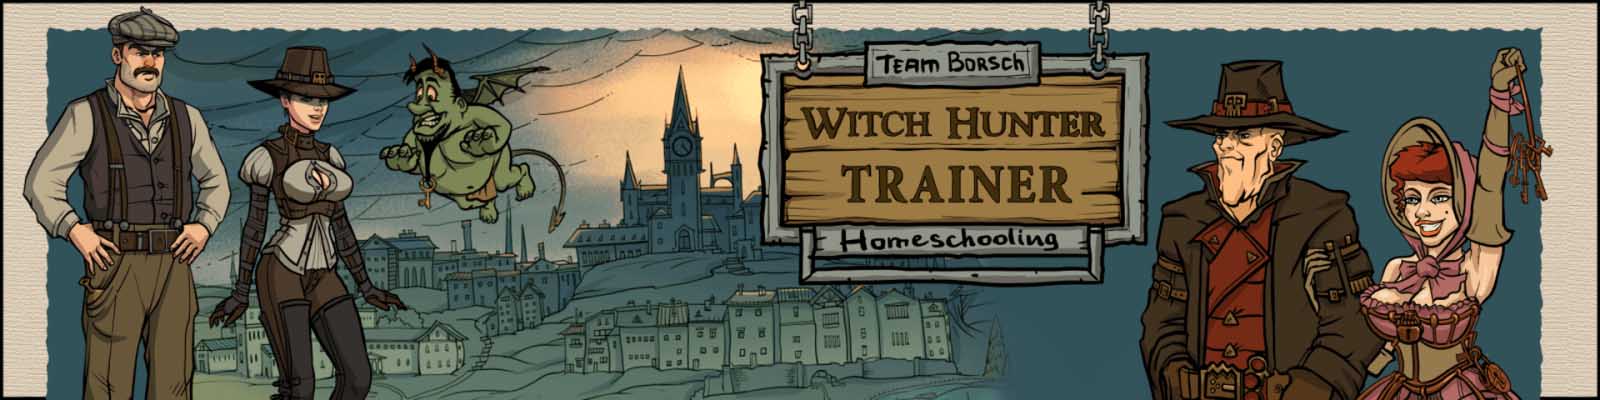 Witch Hunter Trainer 3d game dewasa